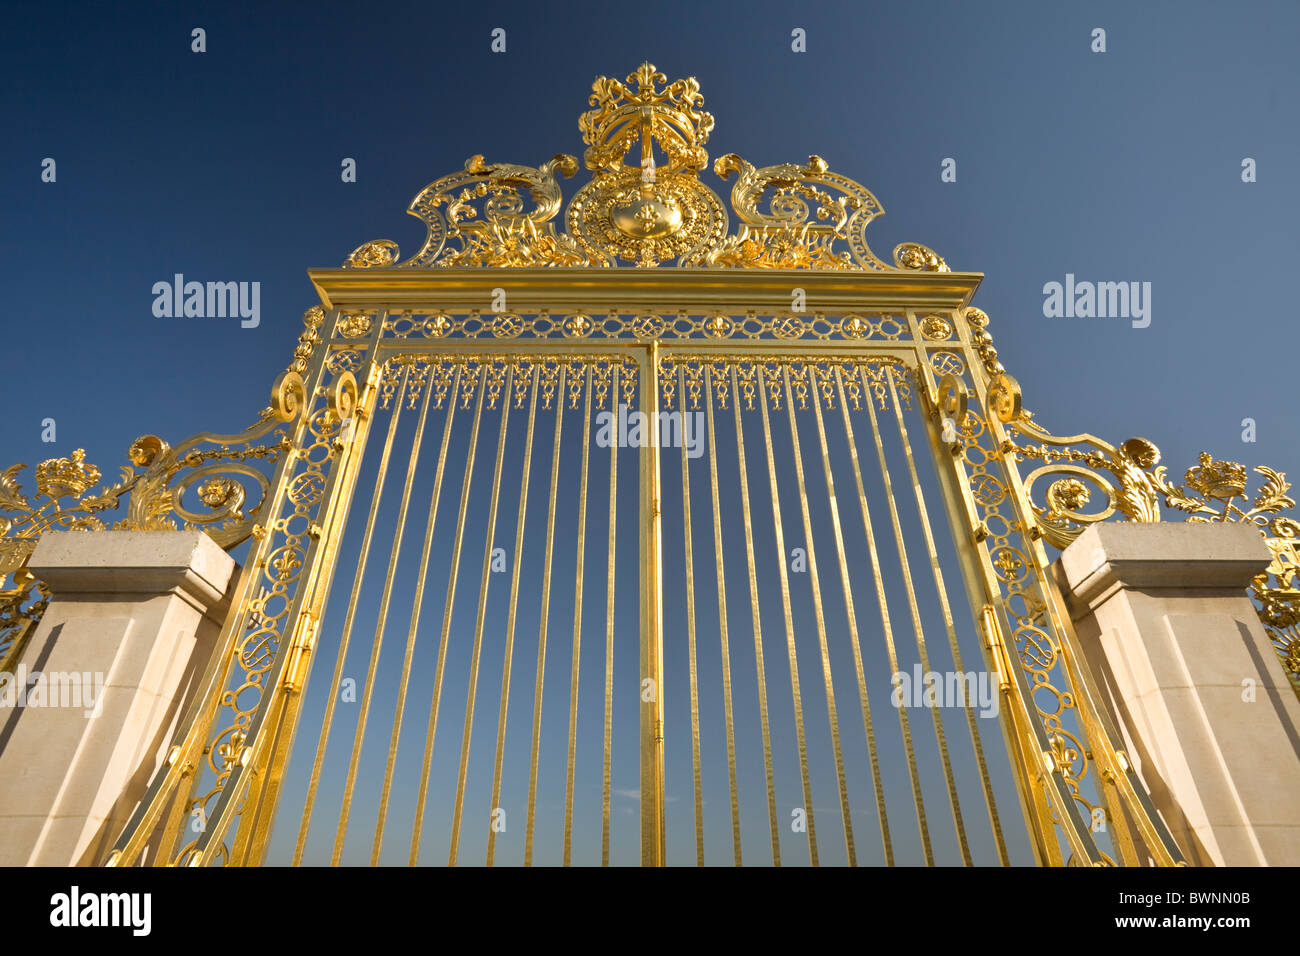 Le Château de Versailles royal golden gate (Versailles - France). La grille royale dorée à l'or fin du Château de Versailles Banque D'Images